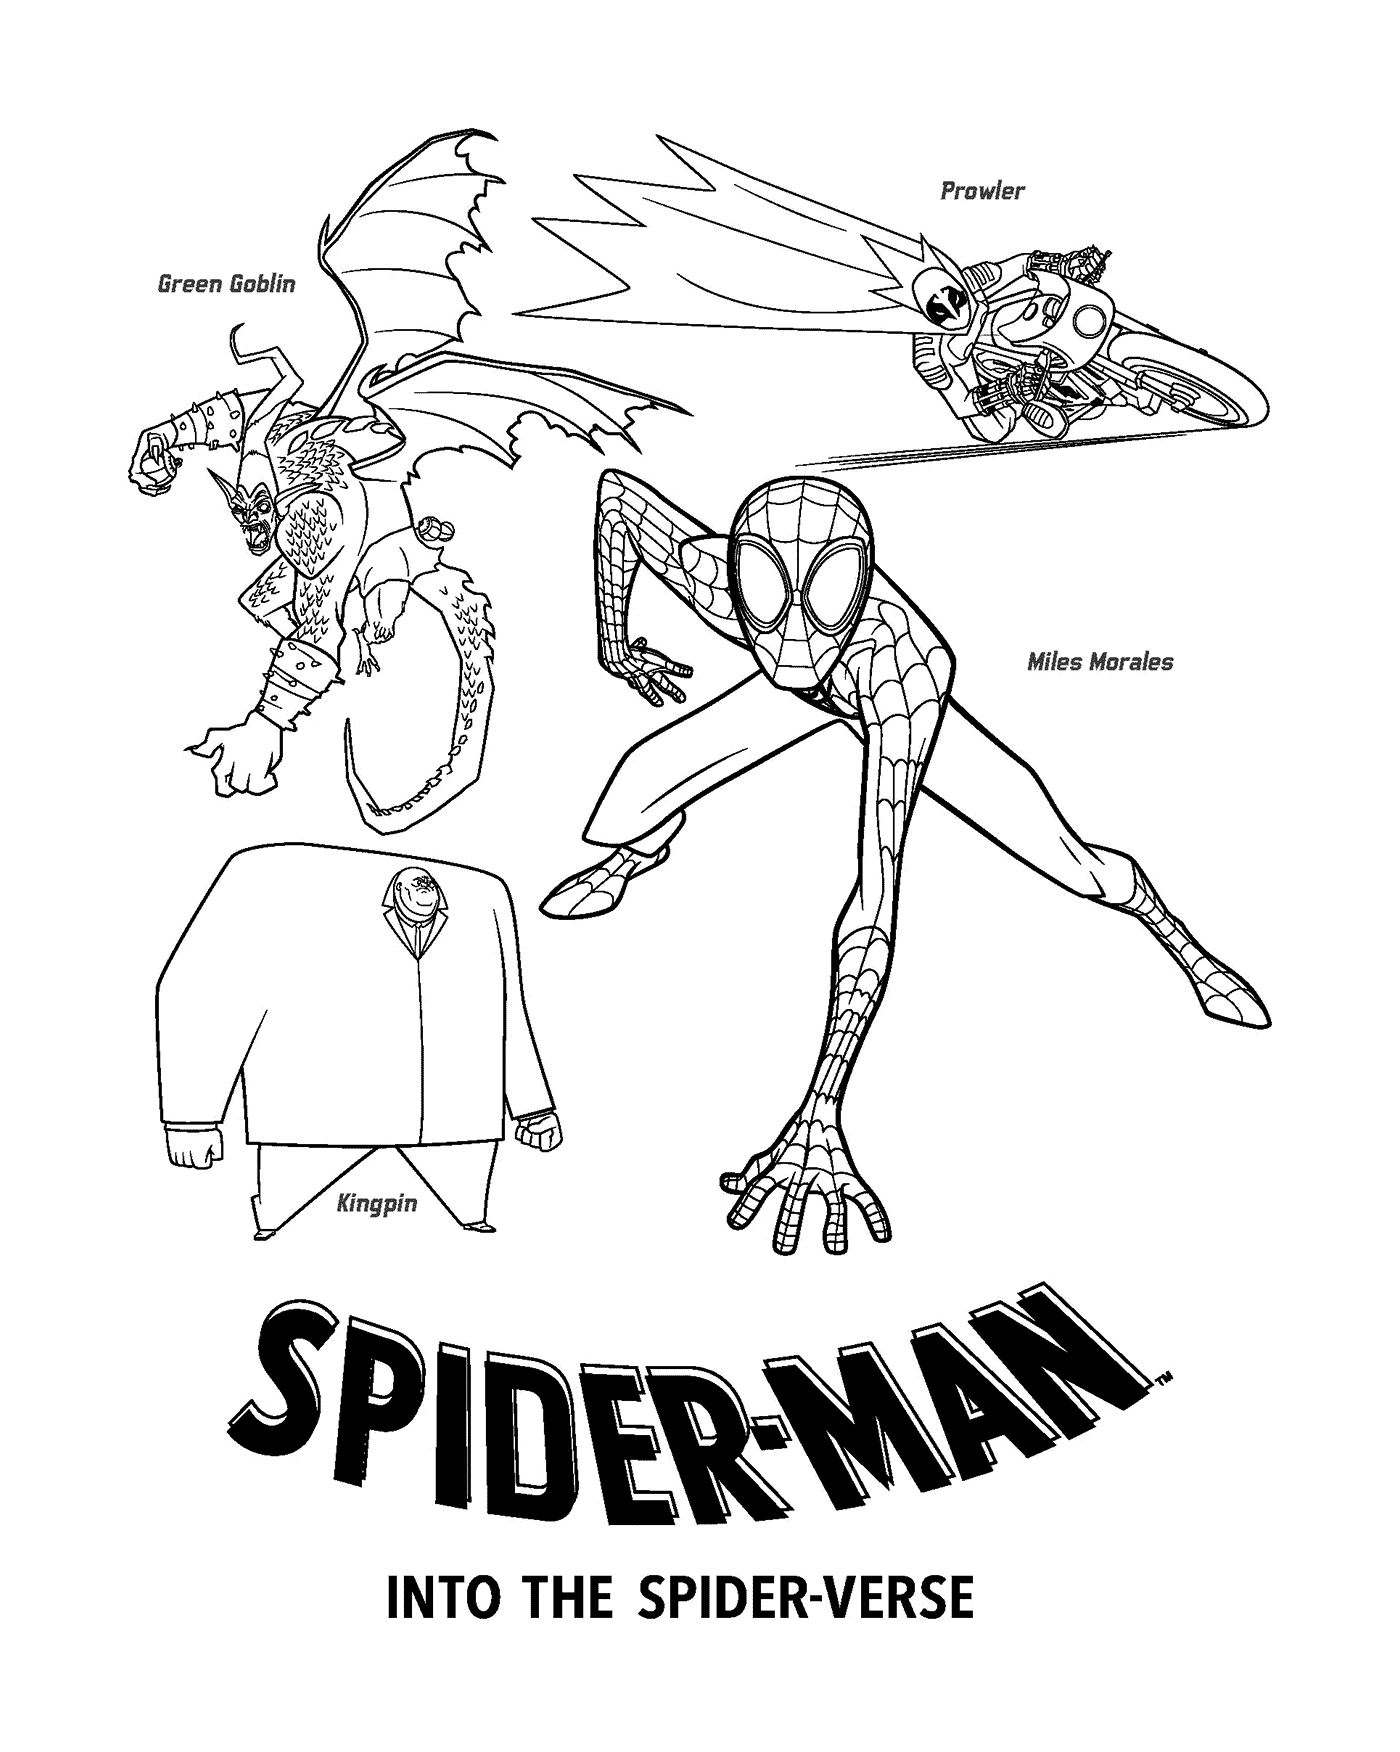  Spider-Man im Spider-Verse 